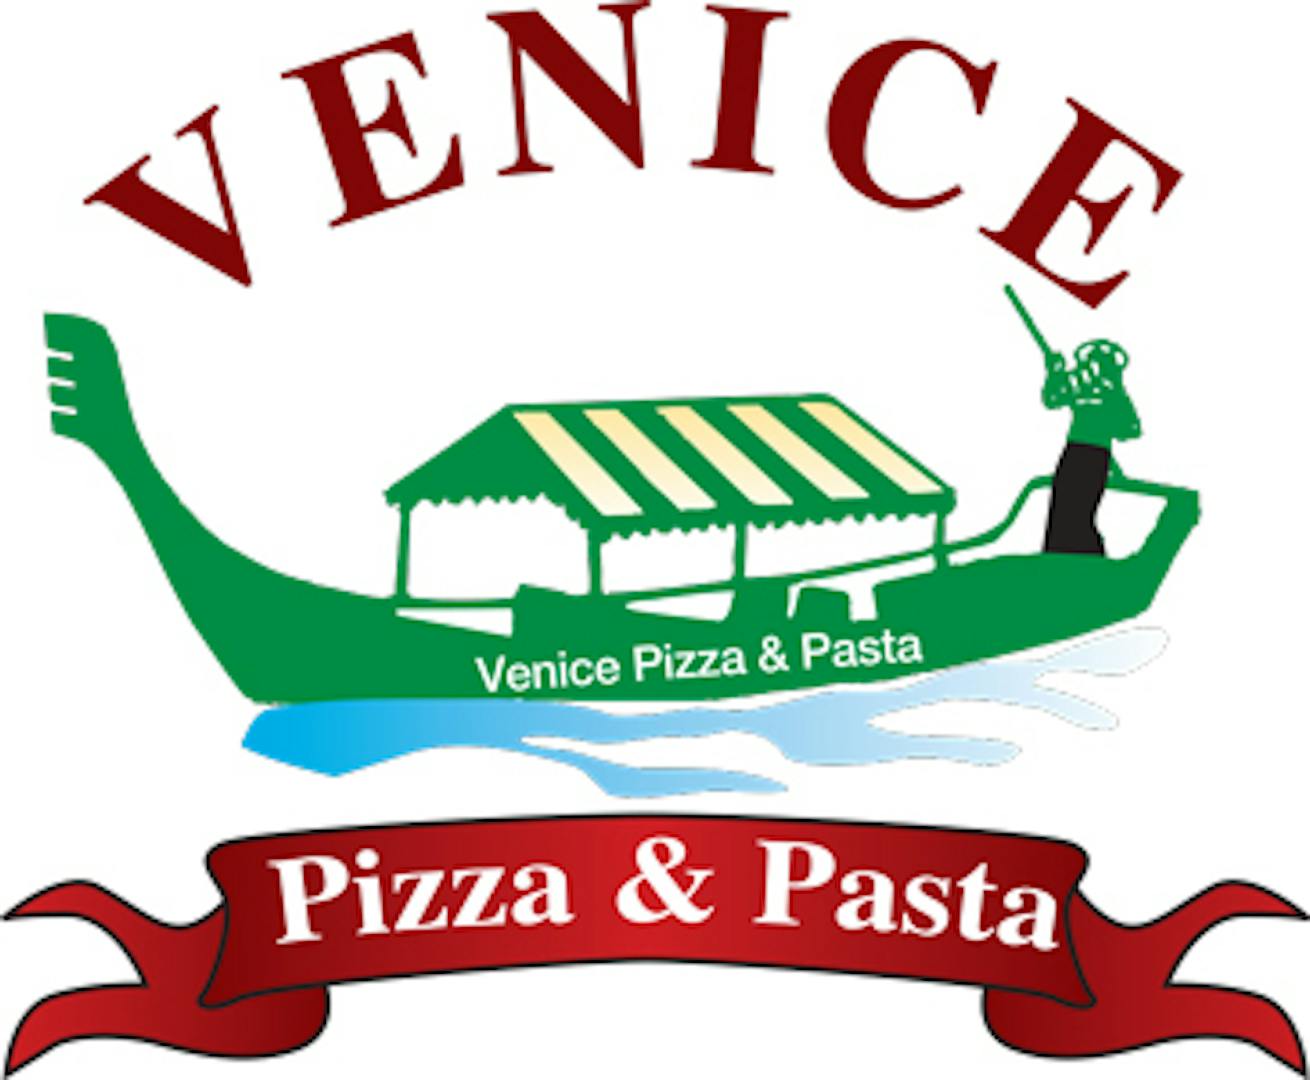 Venice Pizza and Pasta